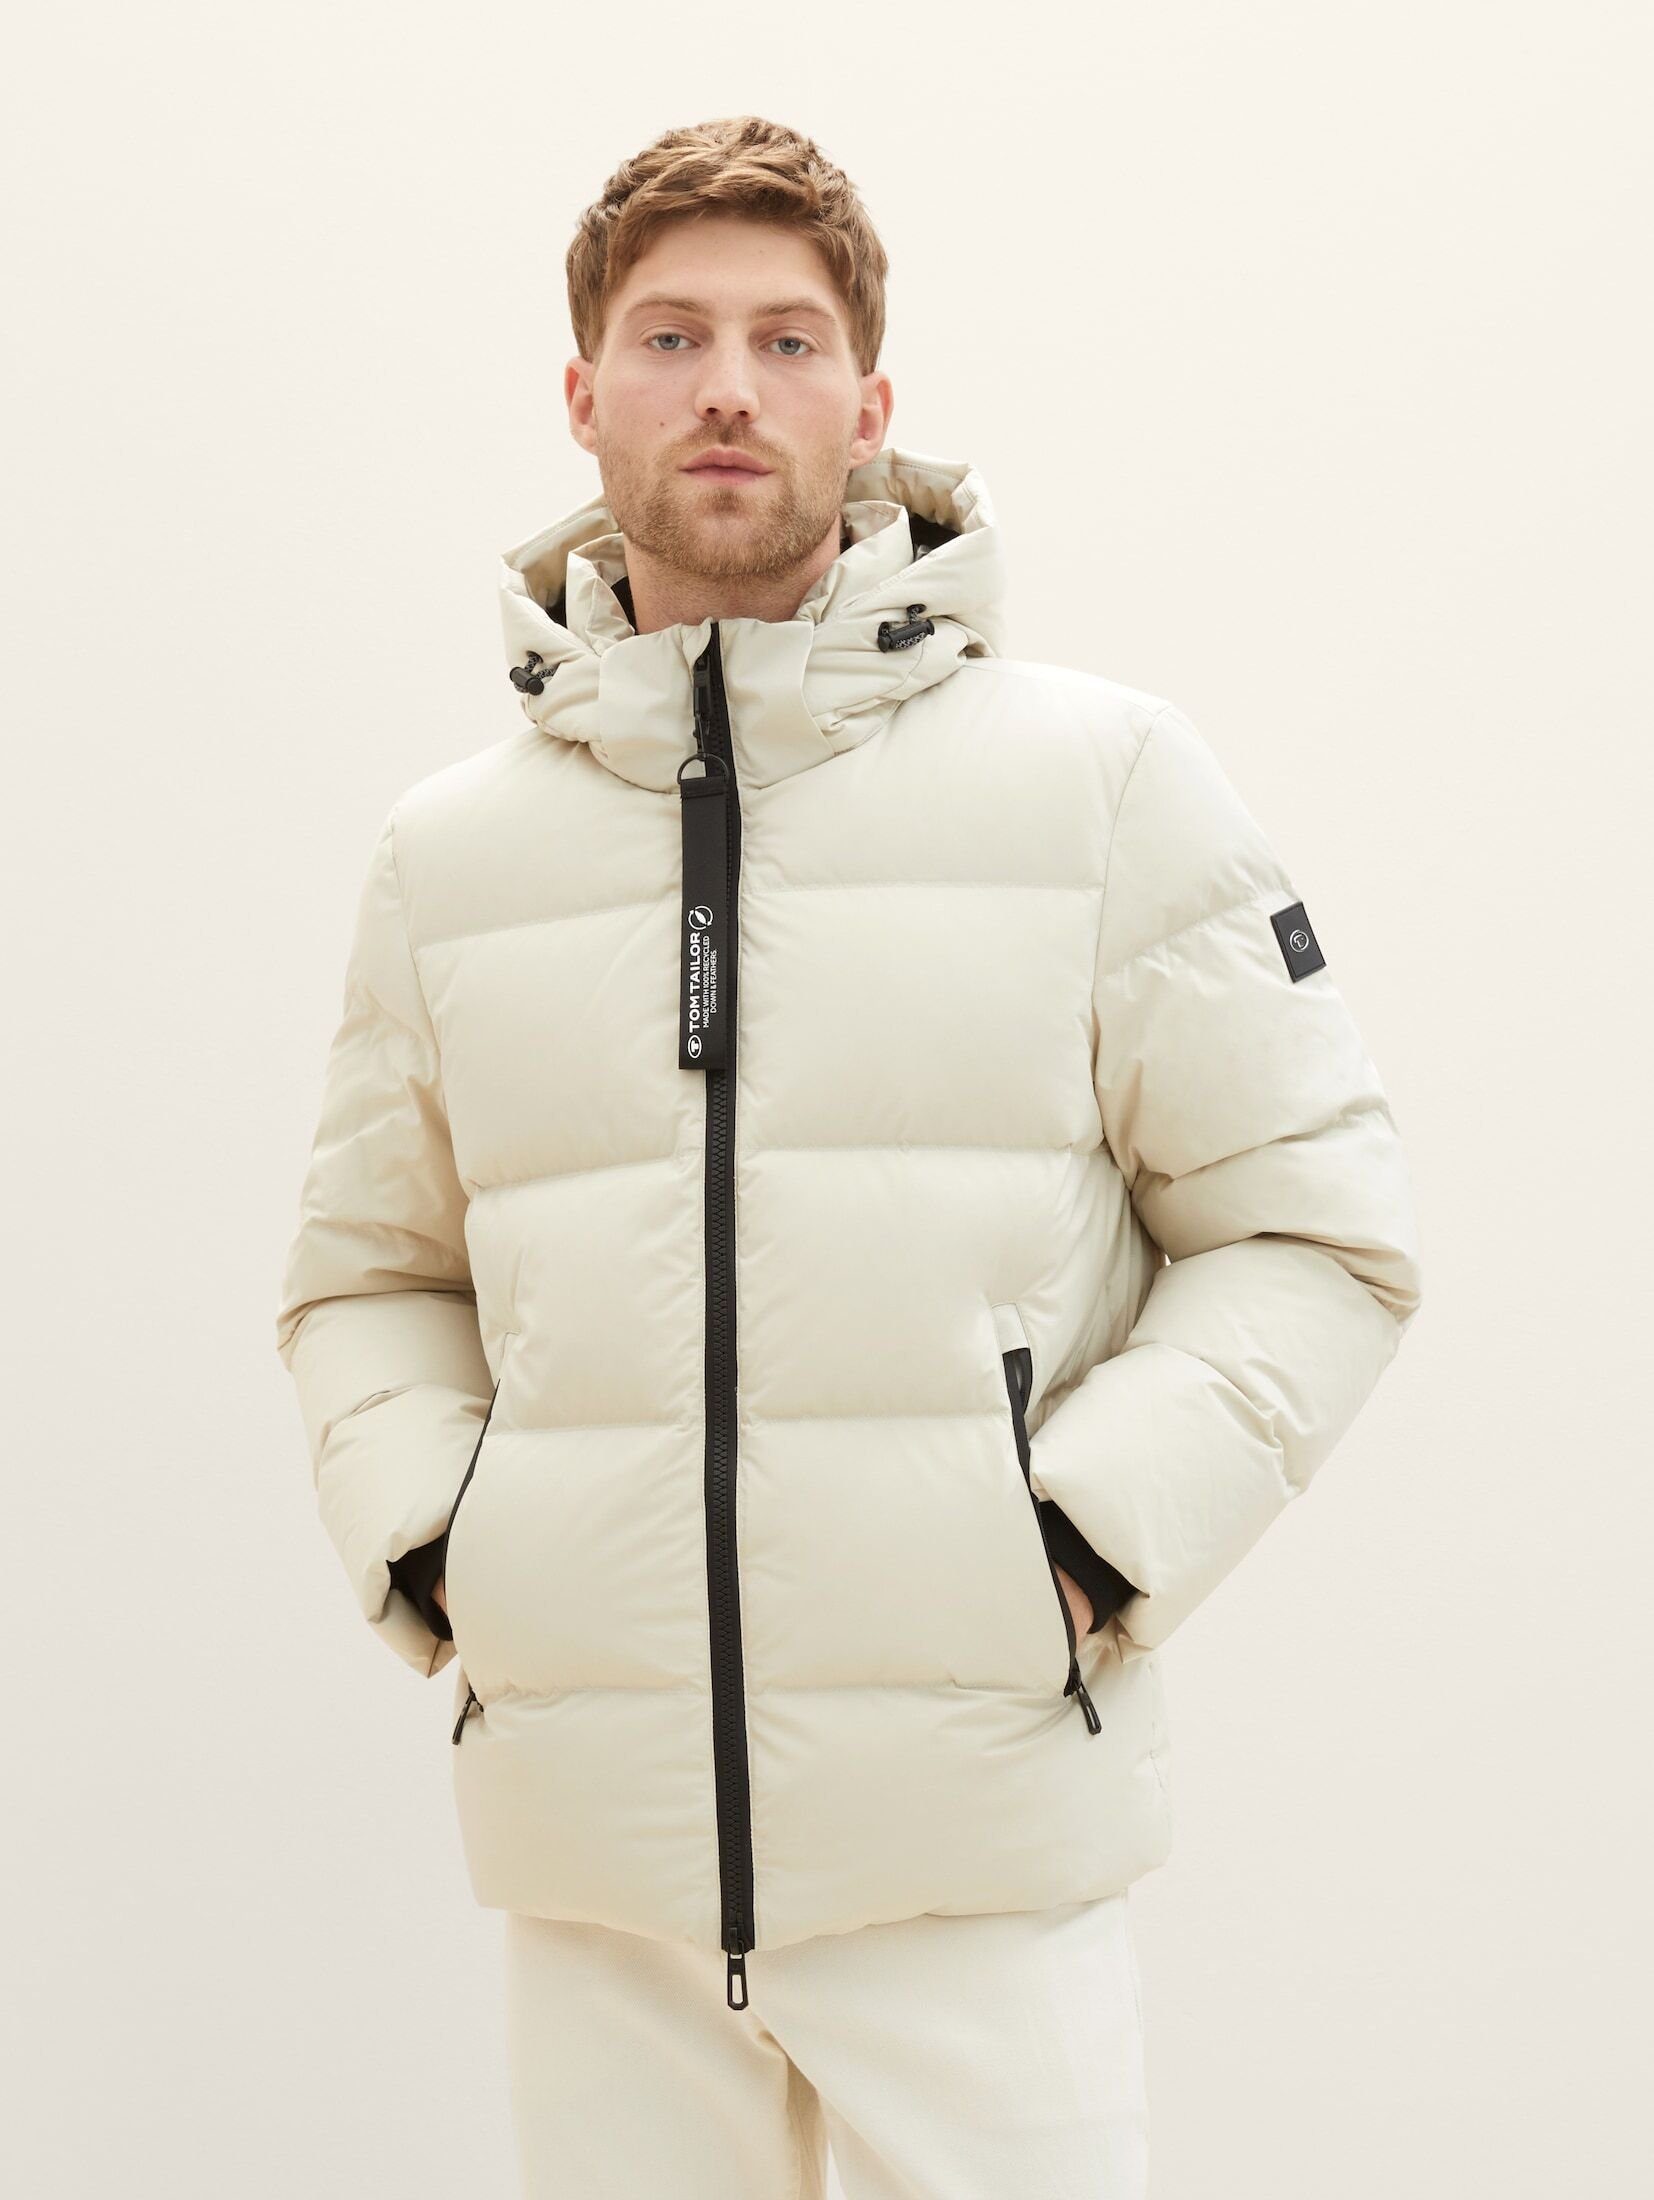 TOM TAILOR Winterjacke Jacke mit M ist cm Größe trägt 190 Model Daune, Unser und recycelter groß